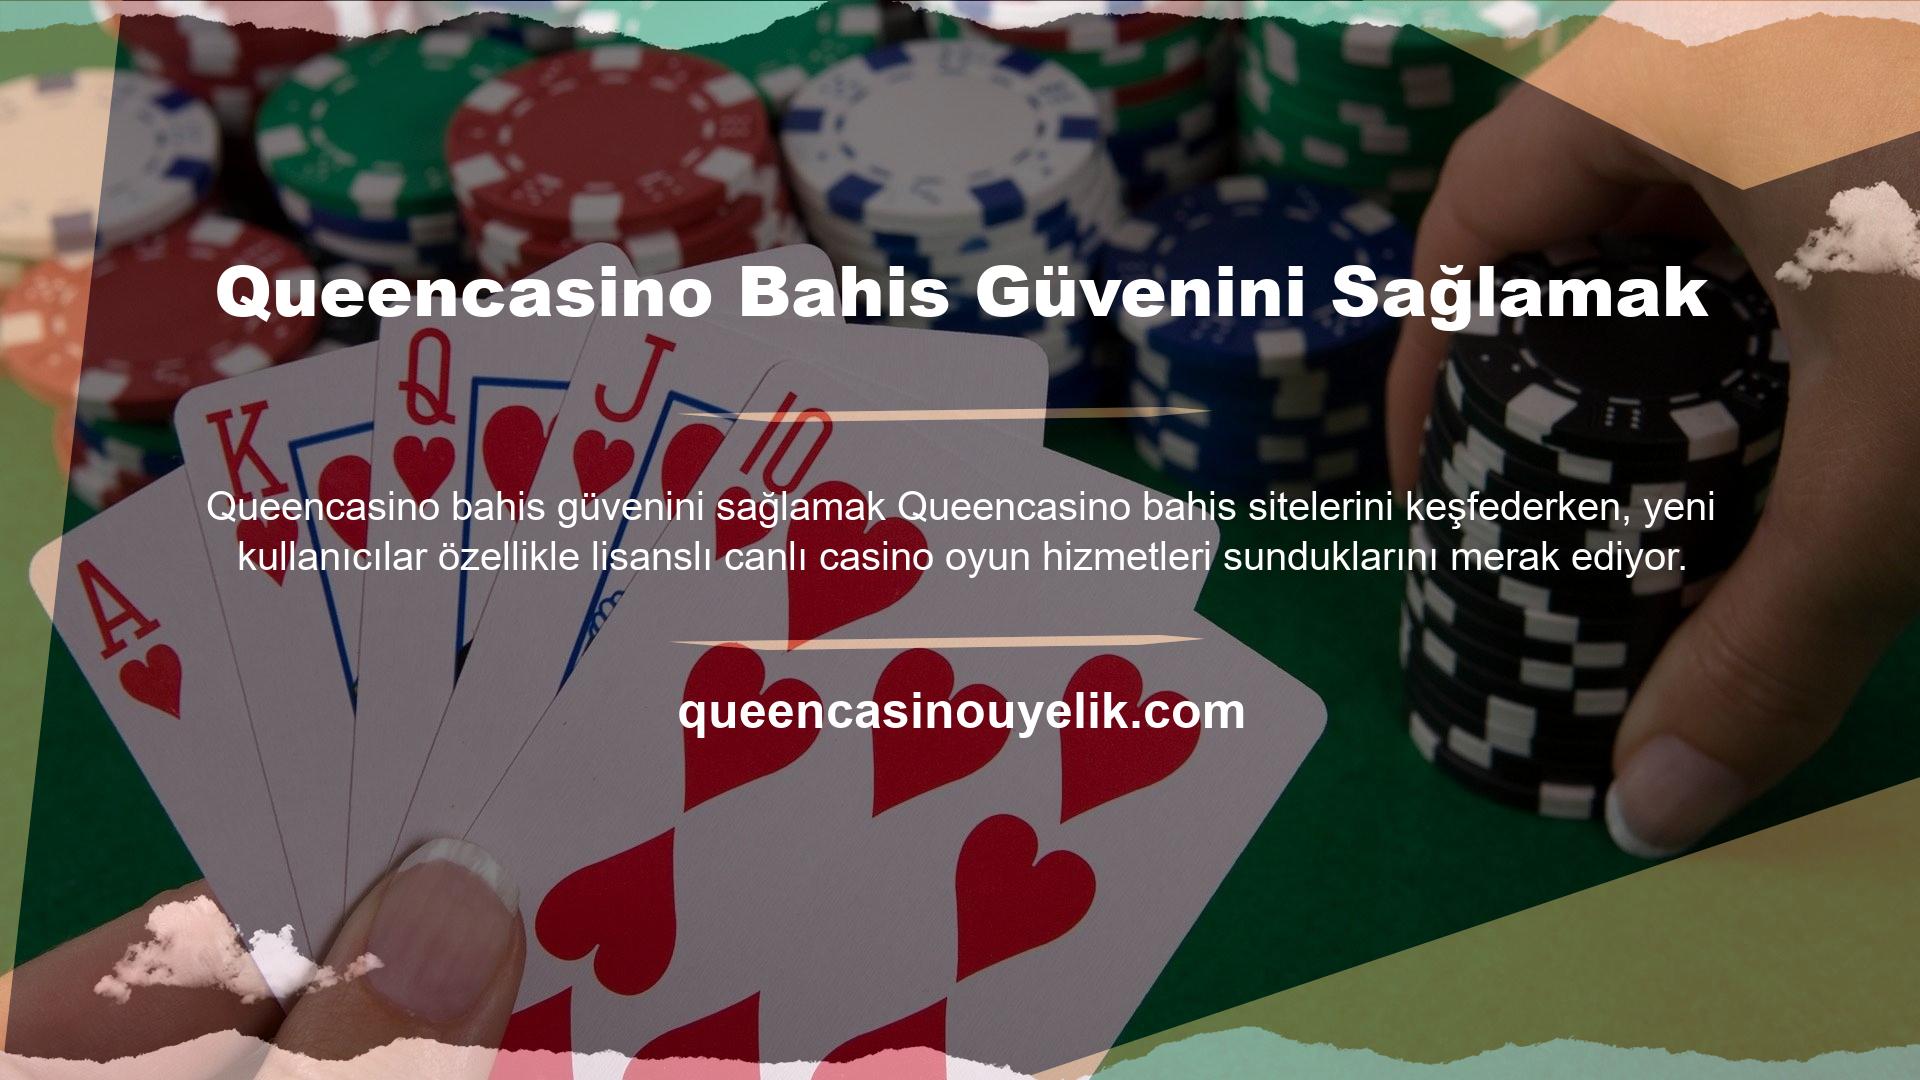 Üstelik bahis piyasasındaki birçok casino bahisinin aksine Queencasino Bahis en kaliteli ve güvenilir firmalarla çalışmaktadır